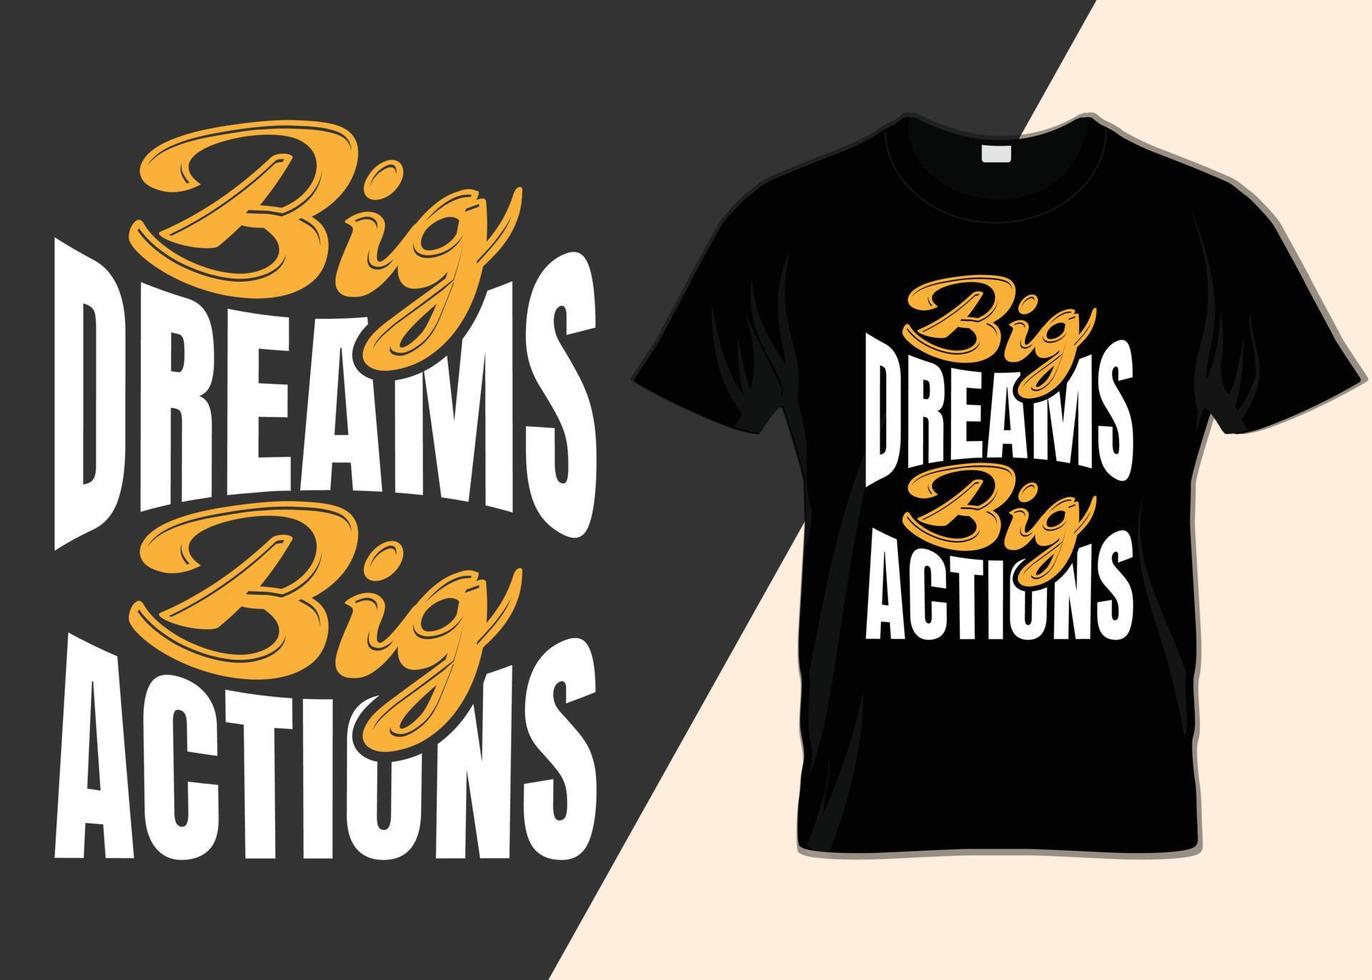 Big dreams big actions T-shirt designs vector